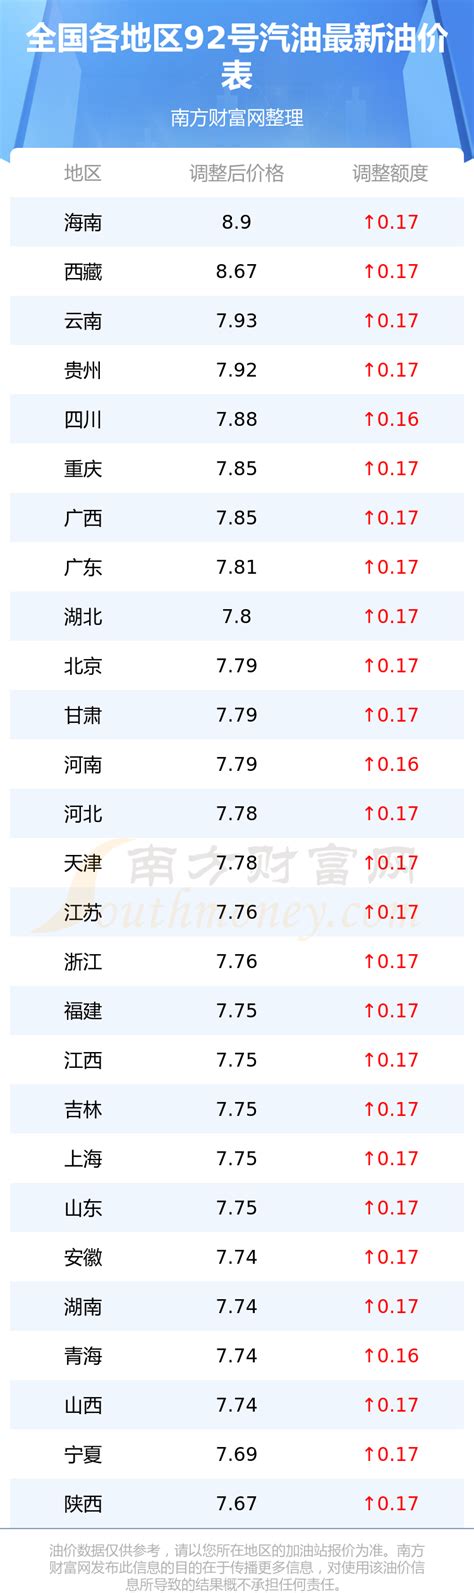 2021年3月17日上海油价调整最新消息(附价格表)- 上海本地宝